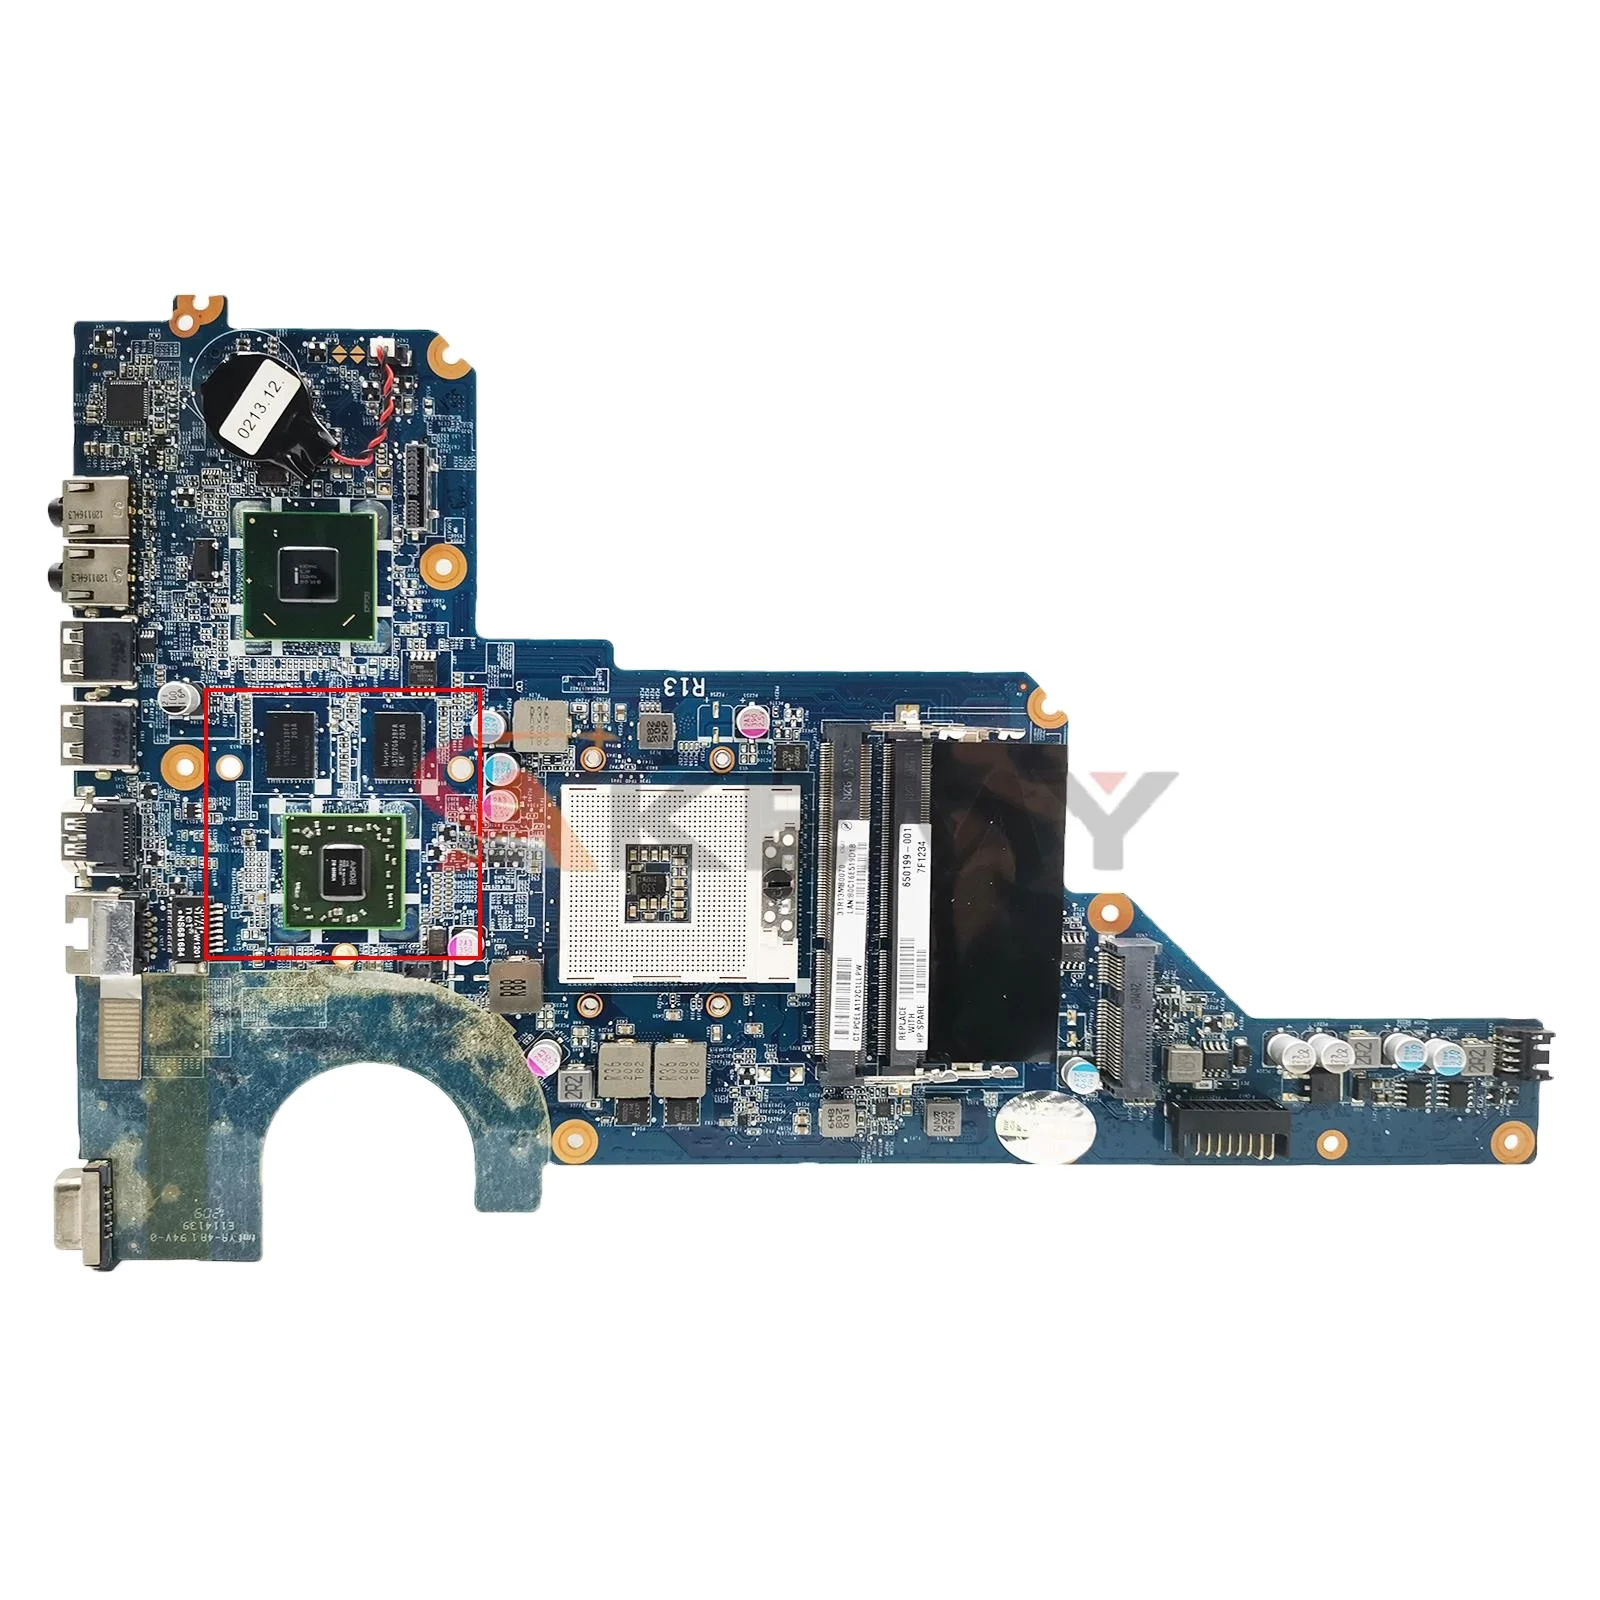 

DA0R13MB6E0 DAOR13MB6E1 For HP G4 G4-1000 G6 G6-1000 G7-1000 Laptop Motherboard With HD6470M 1GB-GPU 636375-001 650199-001